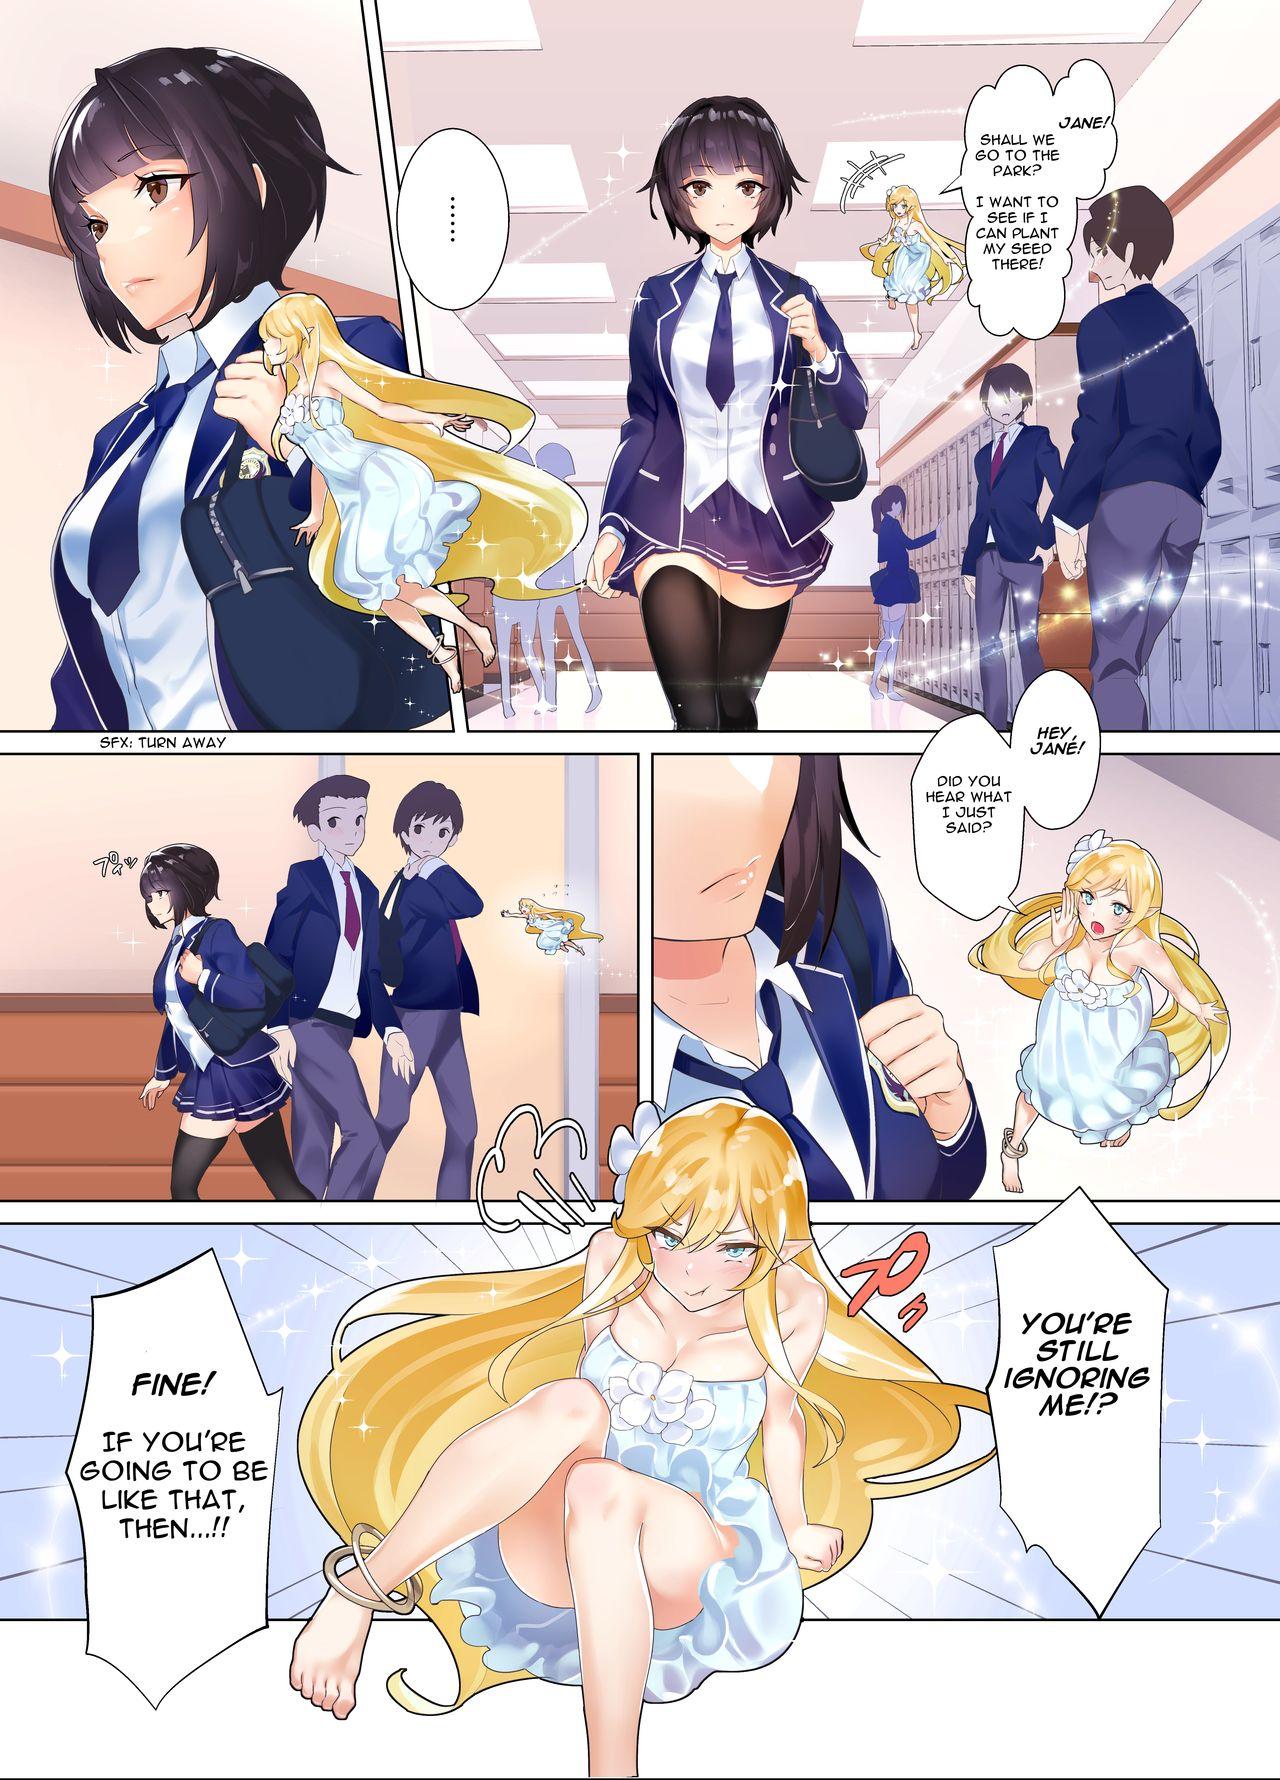 Jane transforming at school manga 1